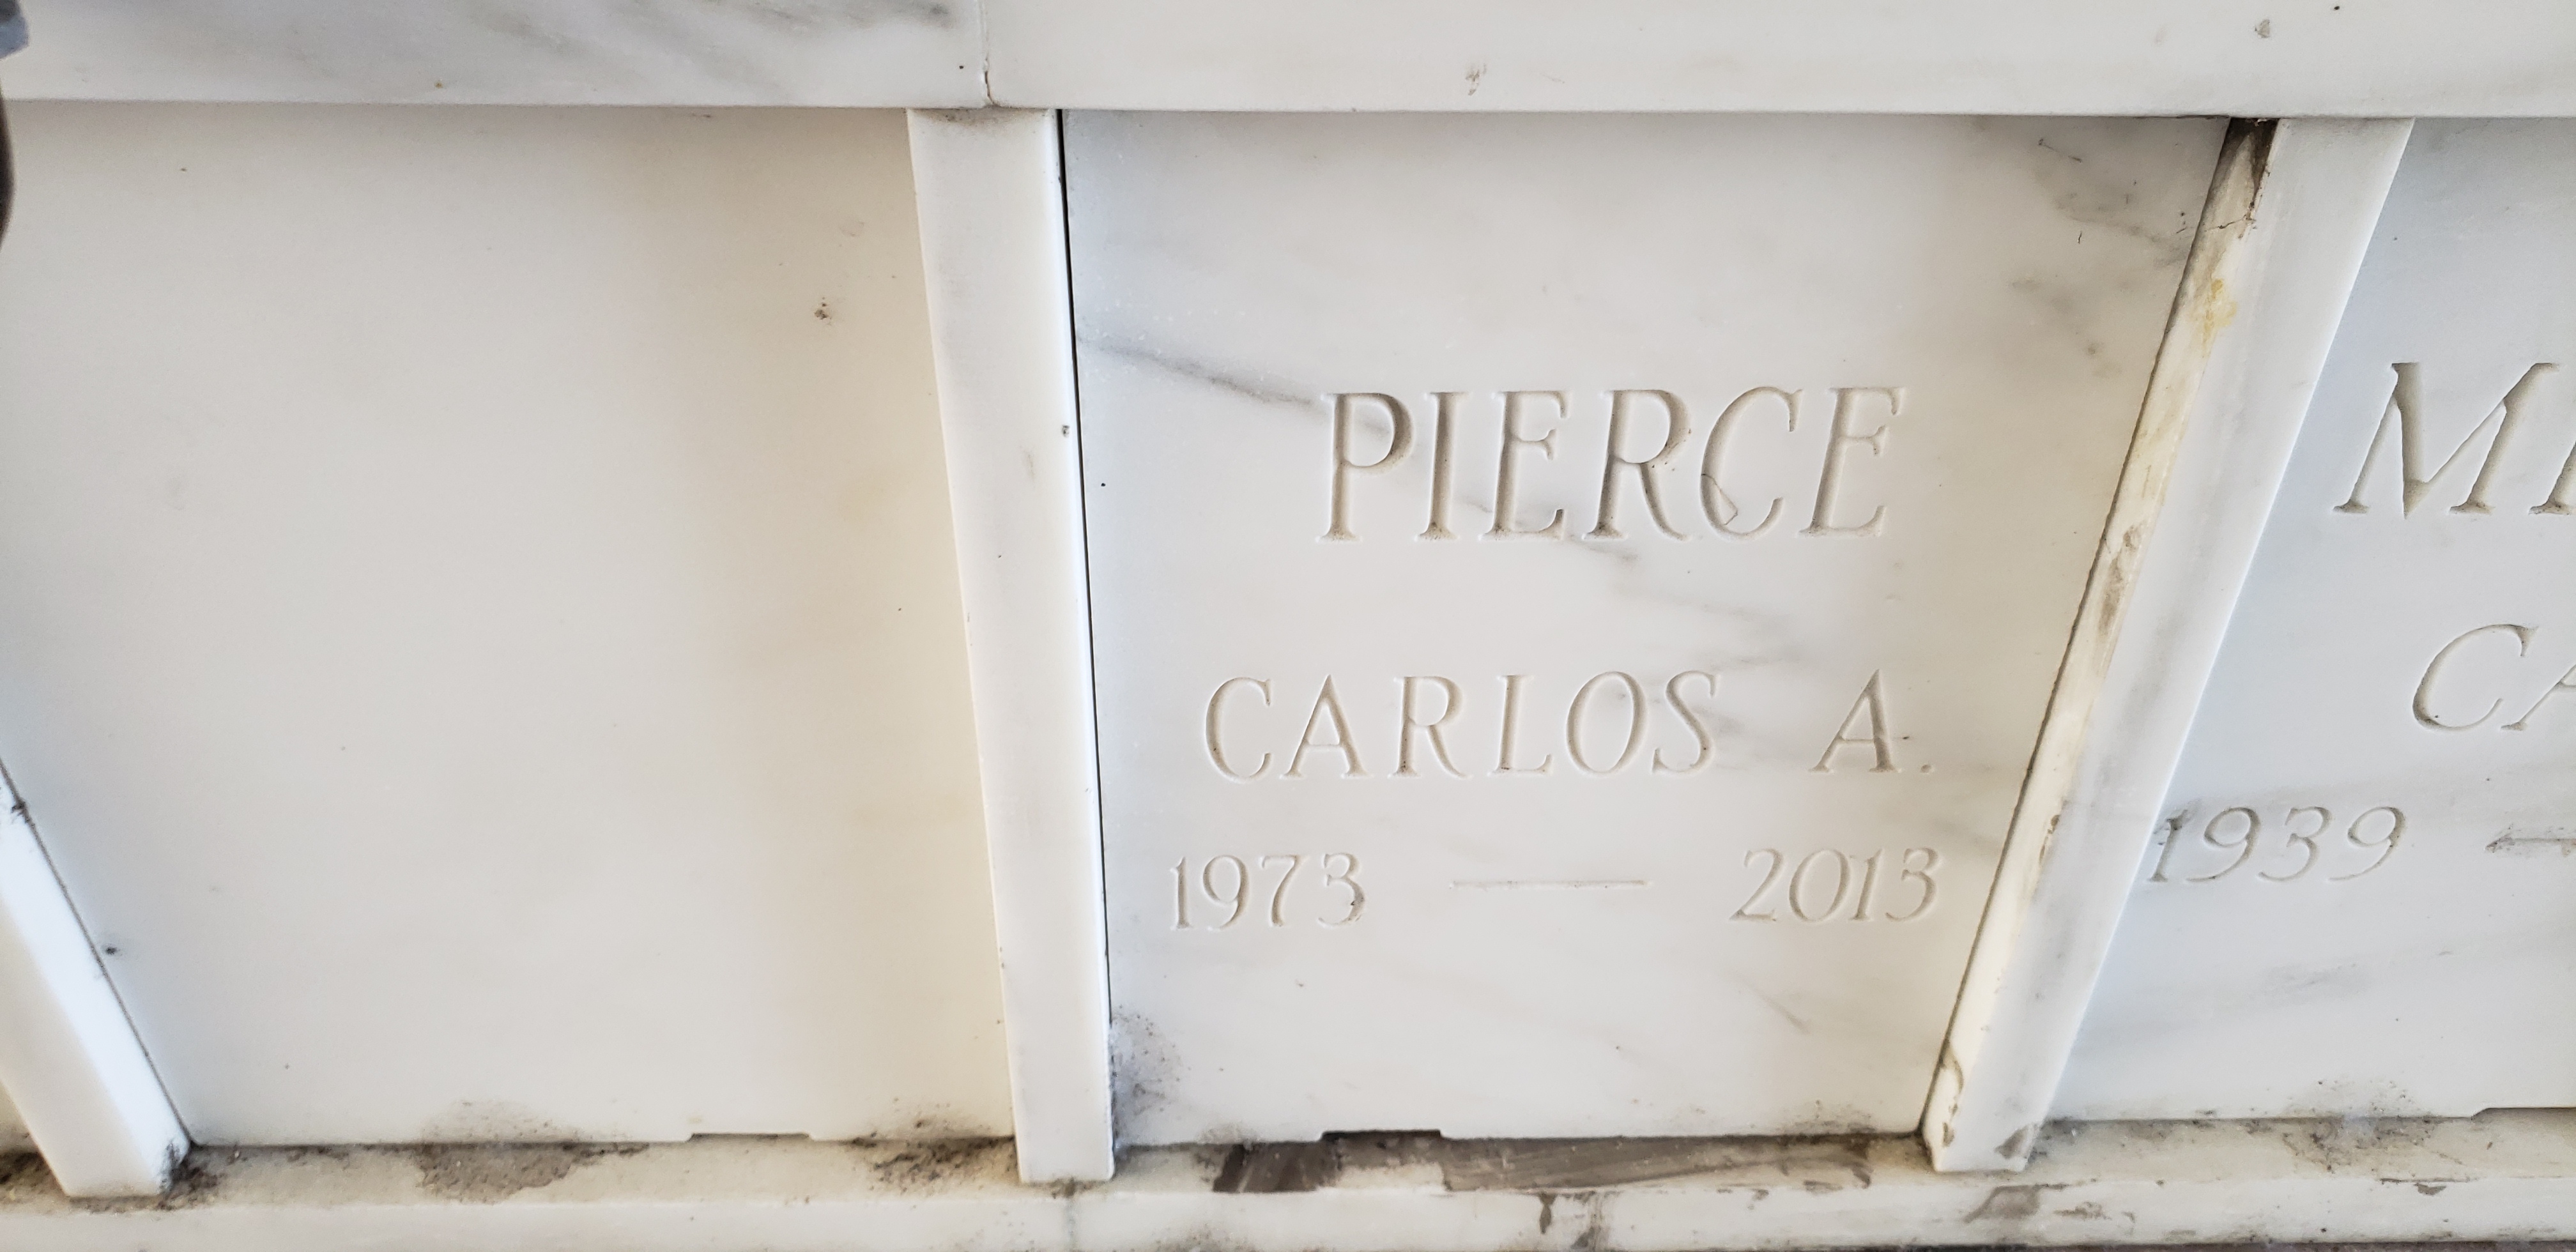 Carlos A Pierce